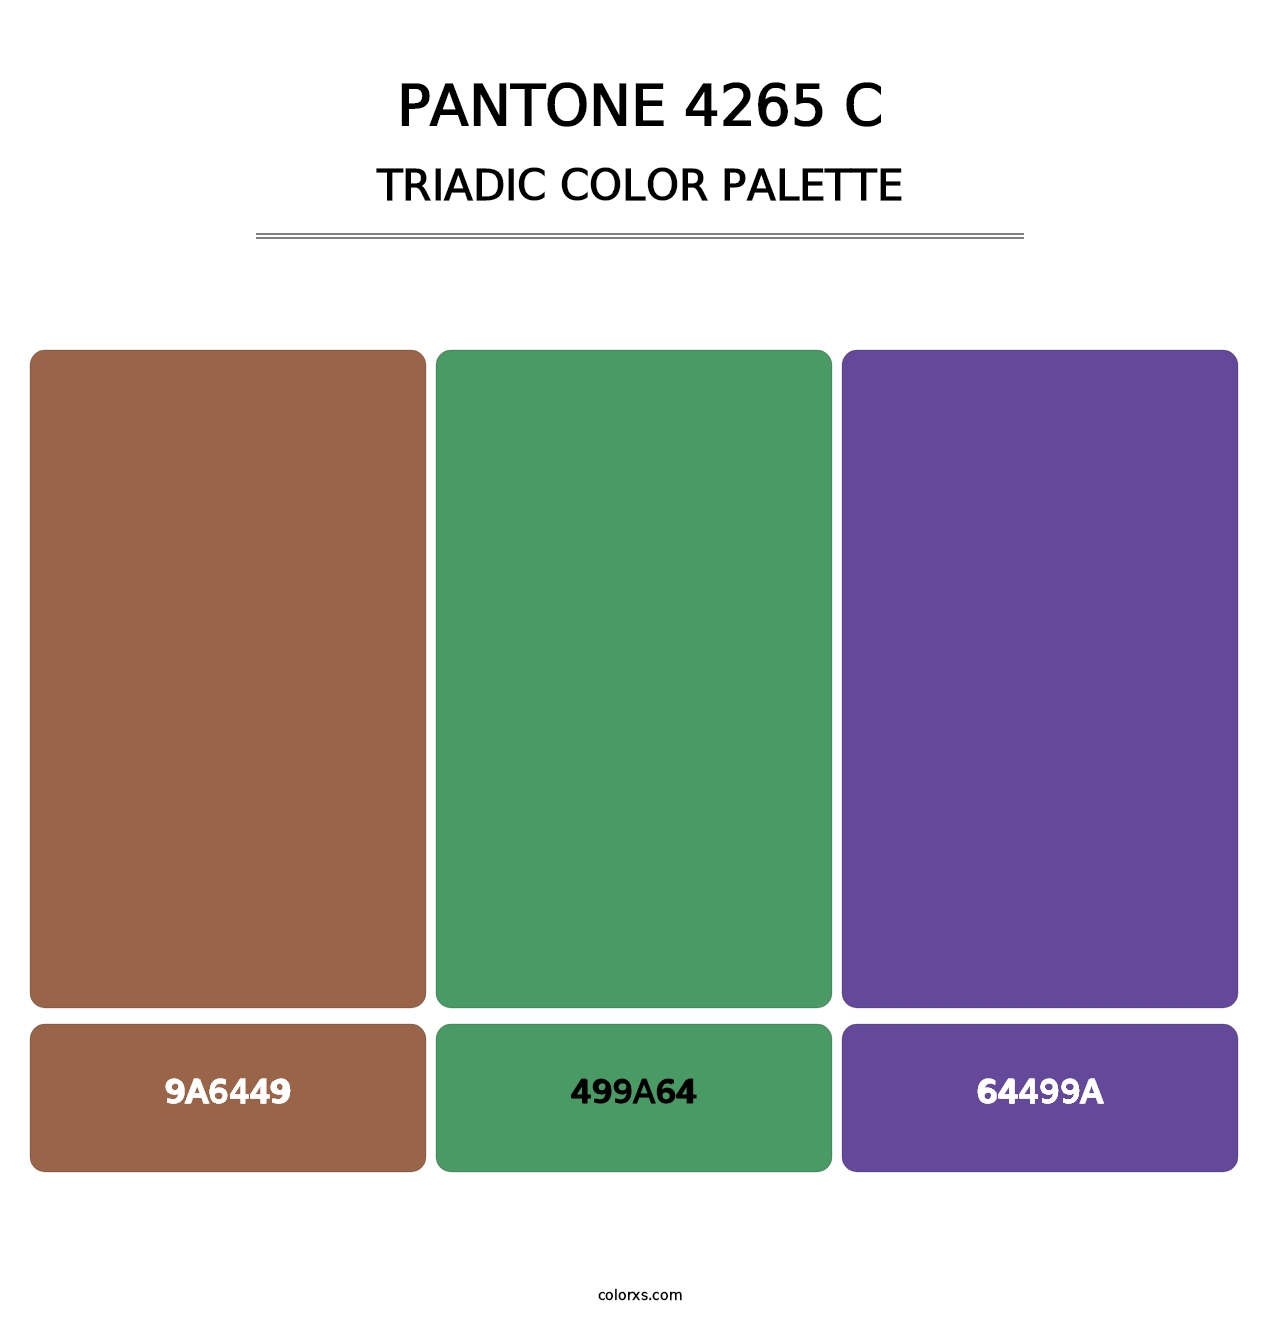 PANTONE 4265 C - Triadic Color Palette